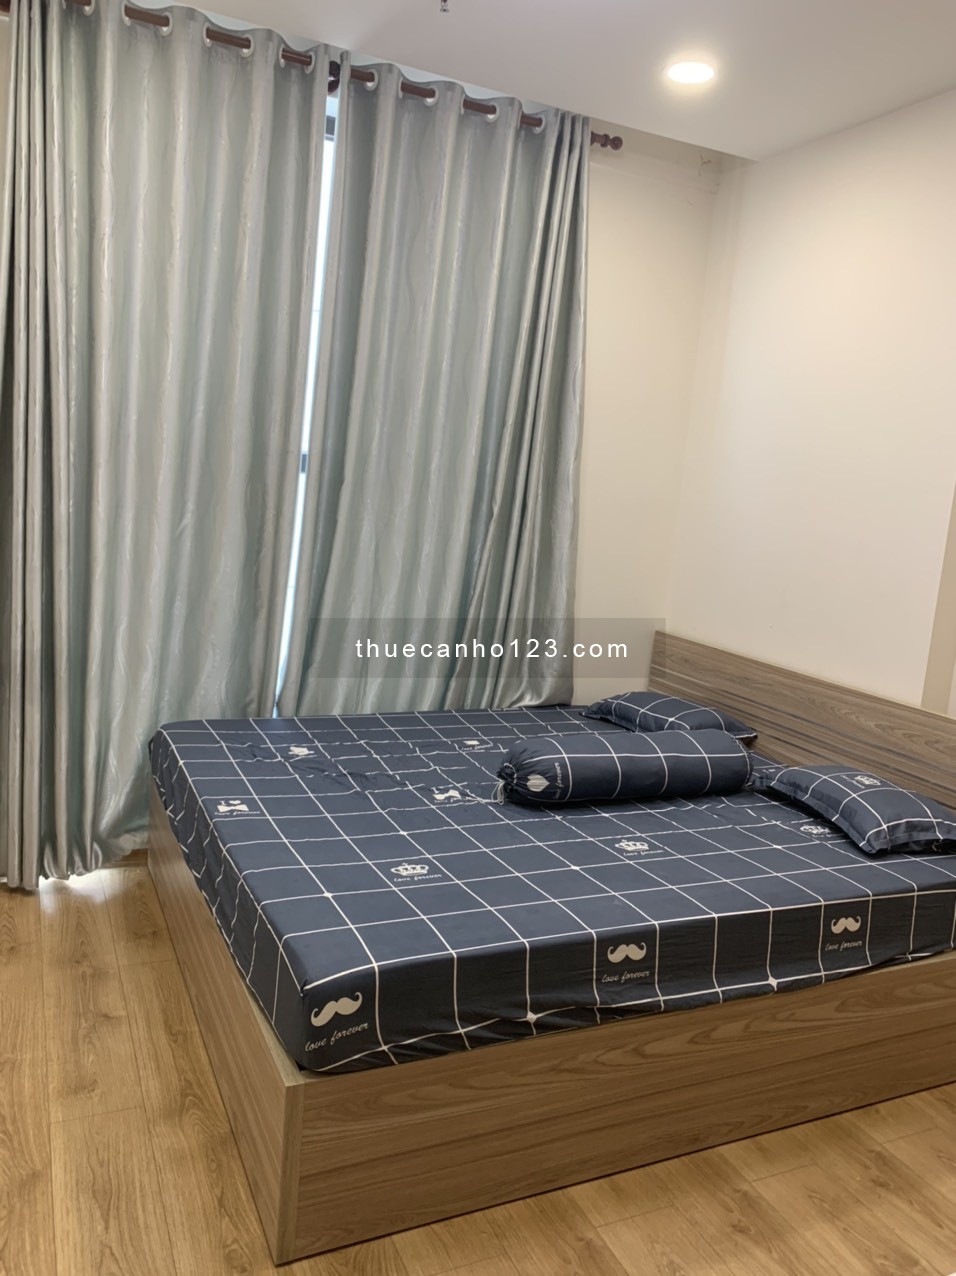 Cho thuê căn hộ Park Legend 2 phòng ngủ có nội thất giá 18 triệu 0908879243 Tuấn